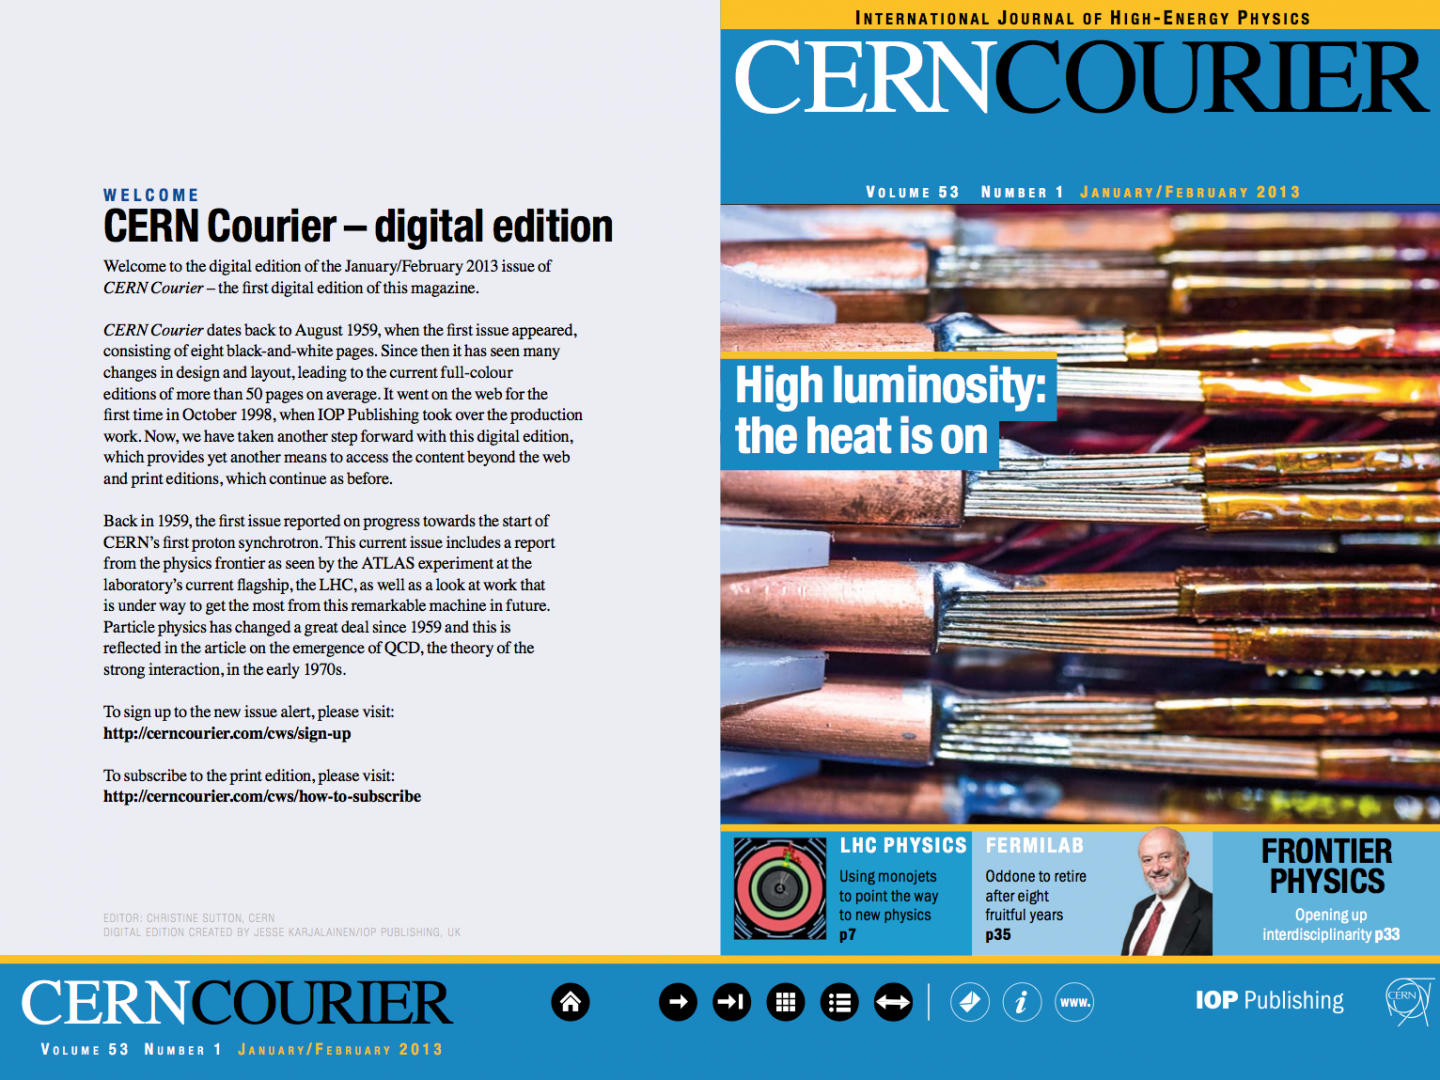 CERN Courier goes digital